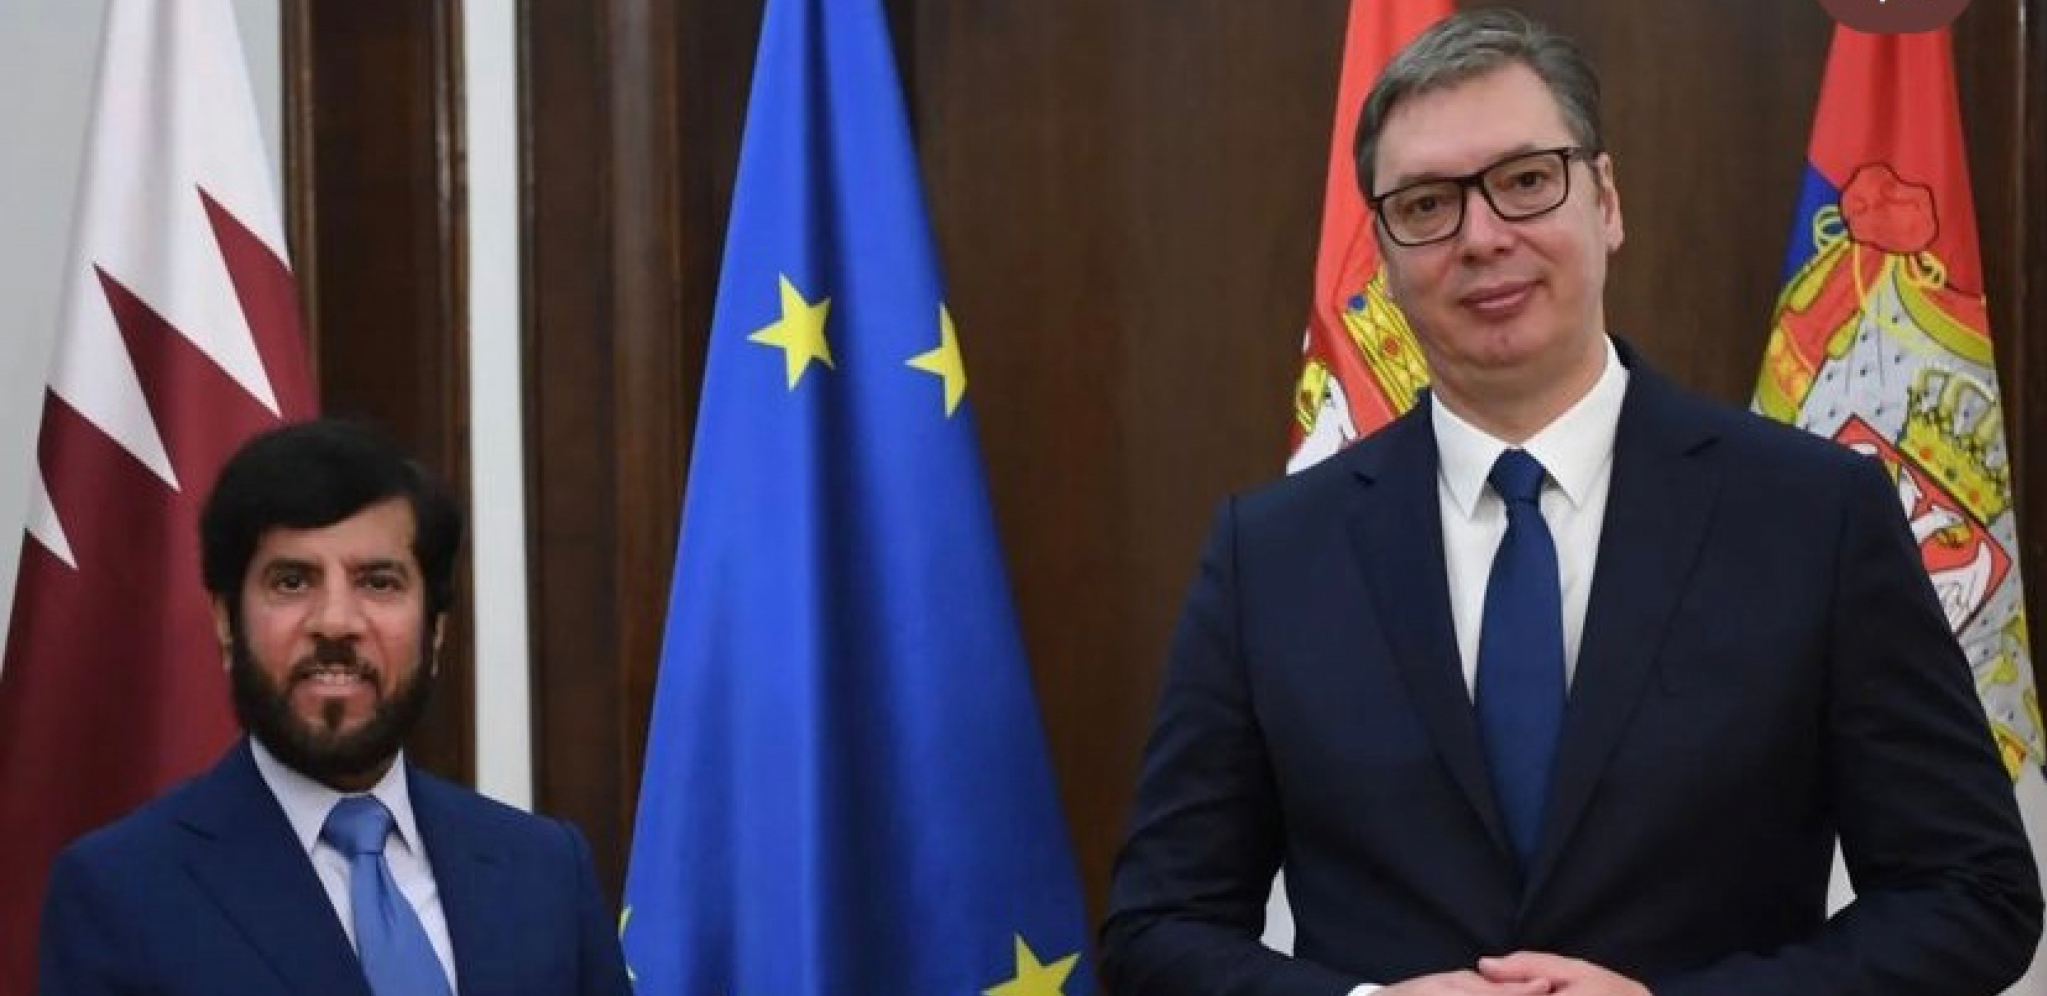 POSTOJI OBOSTRANI INTERES ZA UNAPREĐENJE SARADNJE Prijateljski razgovor Vučića i ambasadora Katara (FOTO)